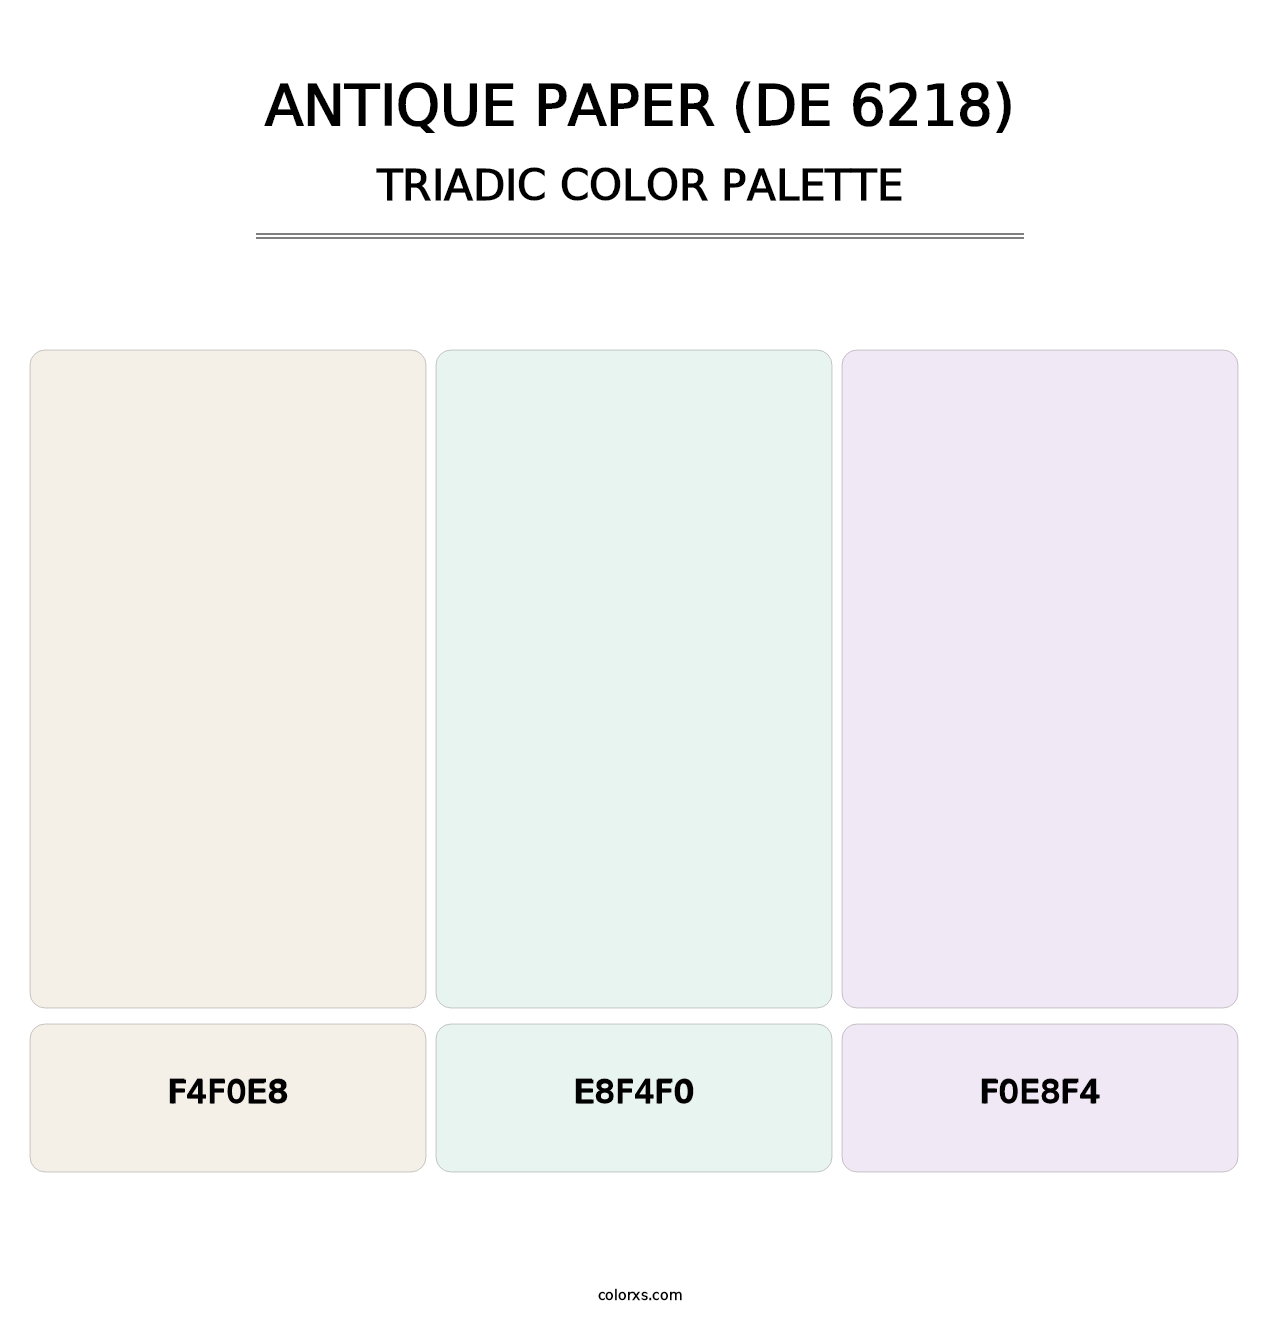 Antique Paper (DE 6218) - Triadic Color Palette